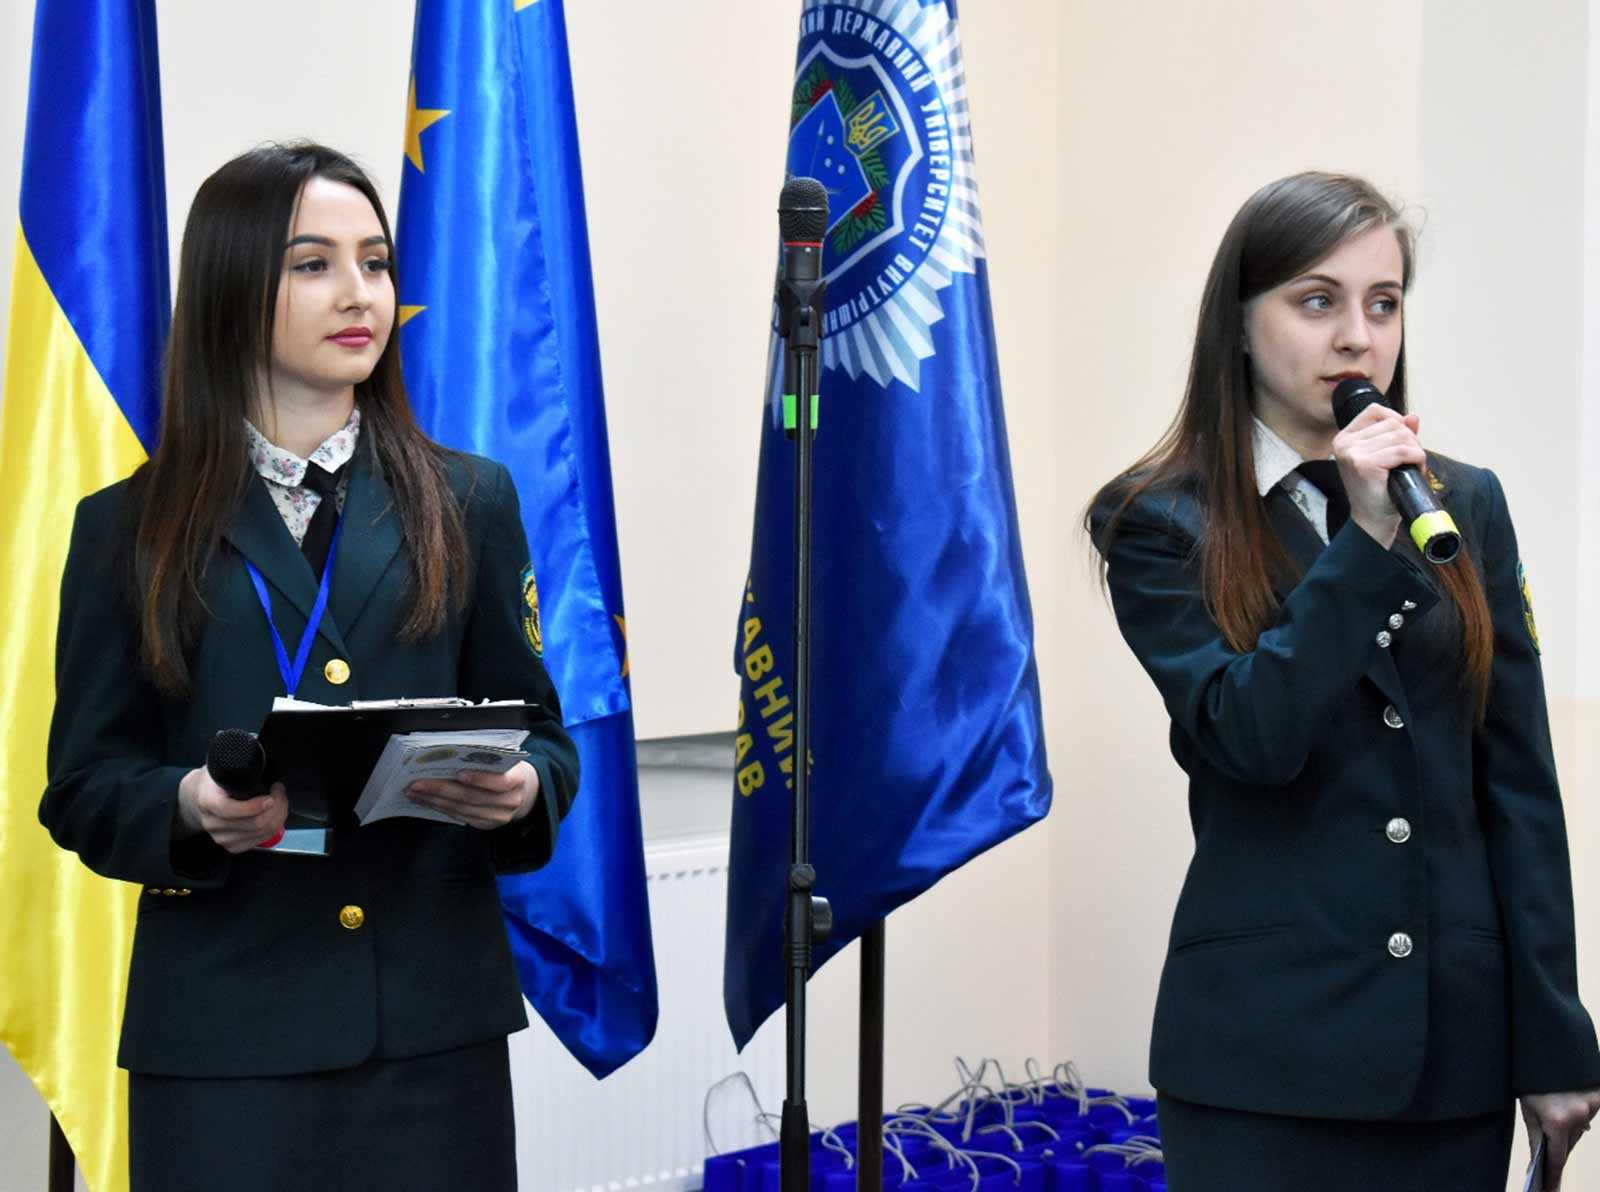 ІV Міжнародний саміт зібрав талановитих та перспективних студентів з усієї України